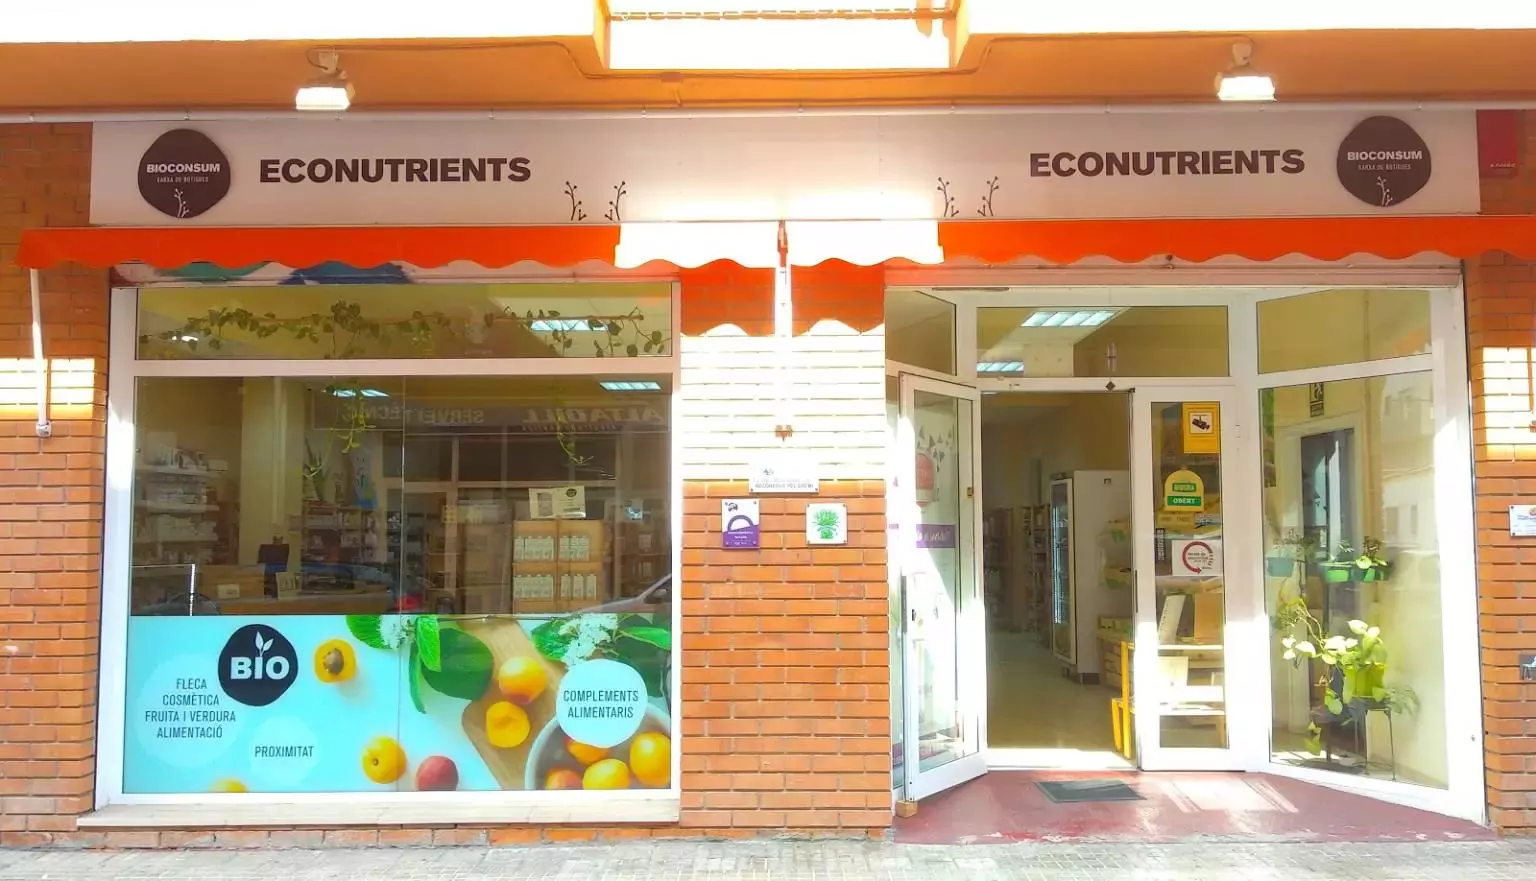 Econutrients Bioconsum Biomarket